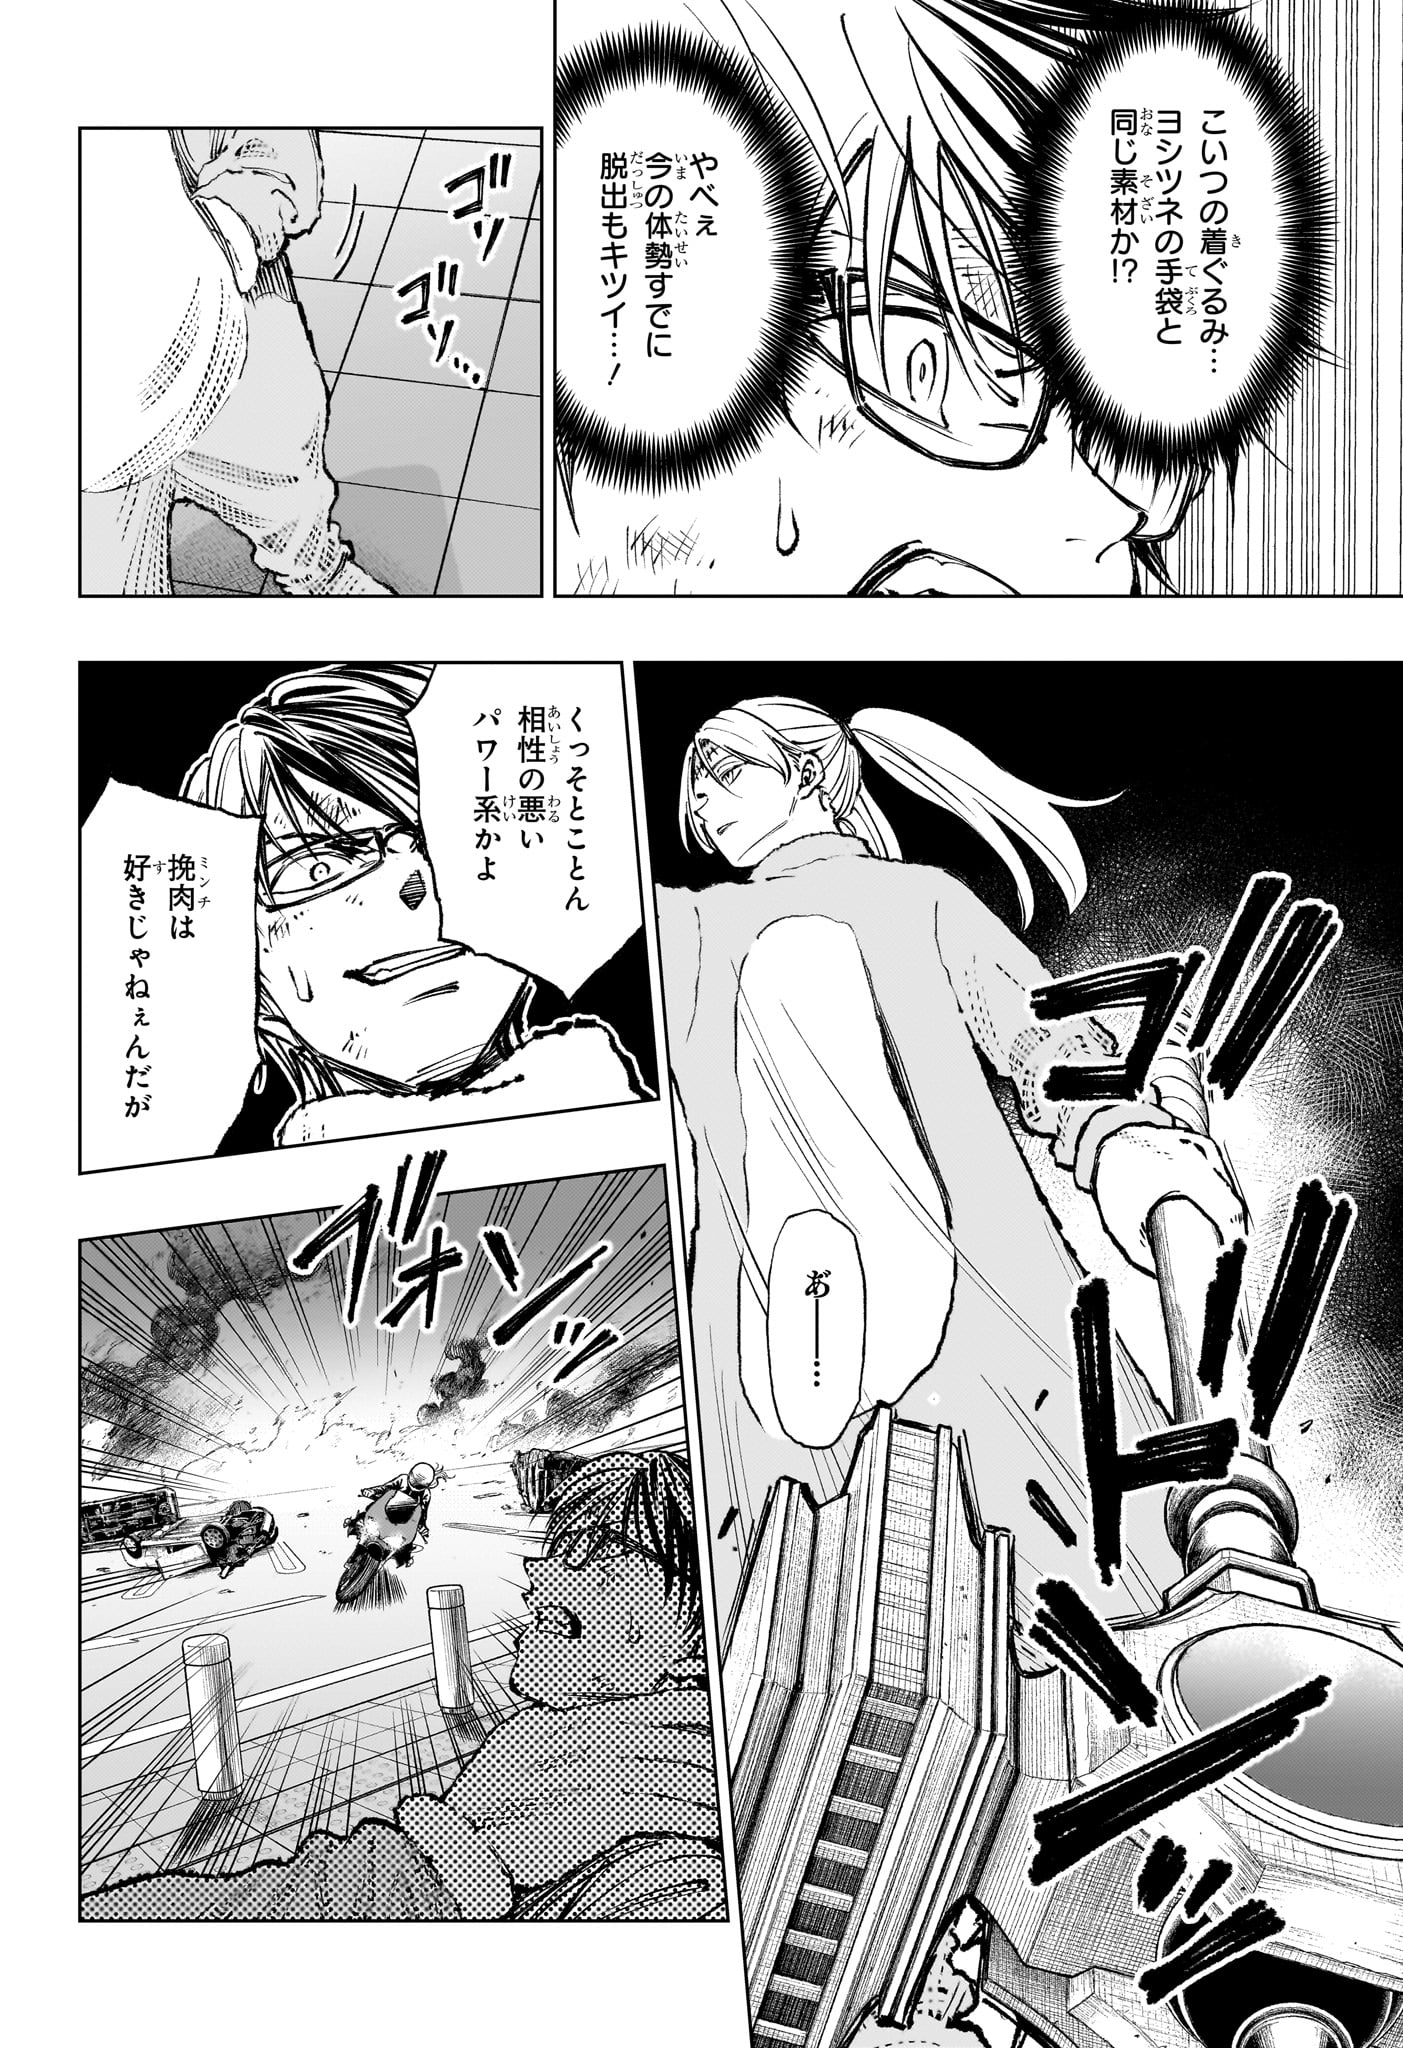 Kill Ao - Chapter 49 - Page 2